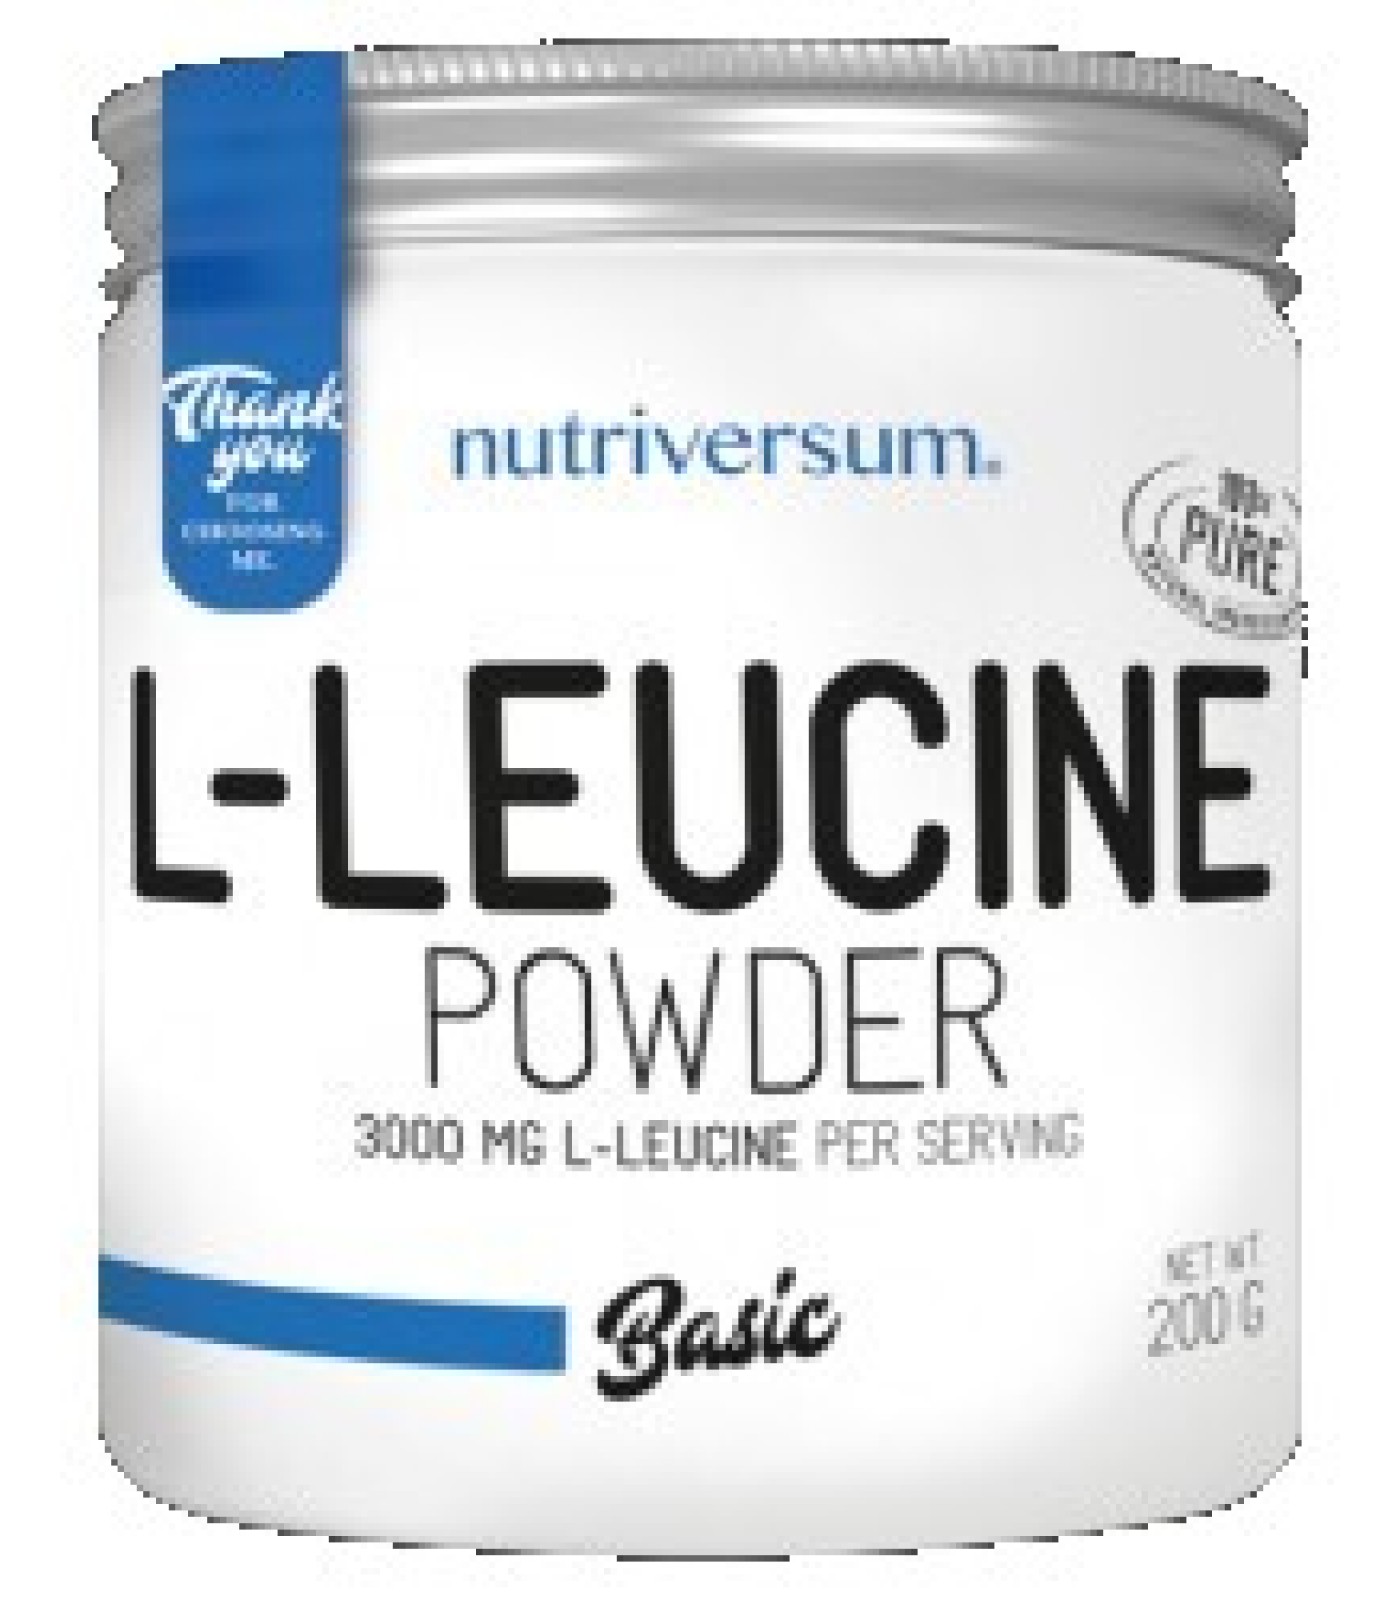 Nutriversum - L-Leucine Powder | 100% Pure Leucine / 200 gr.